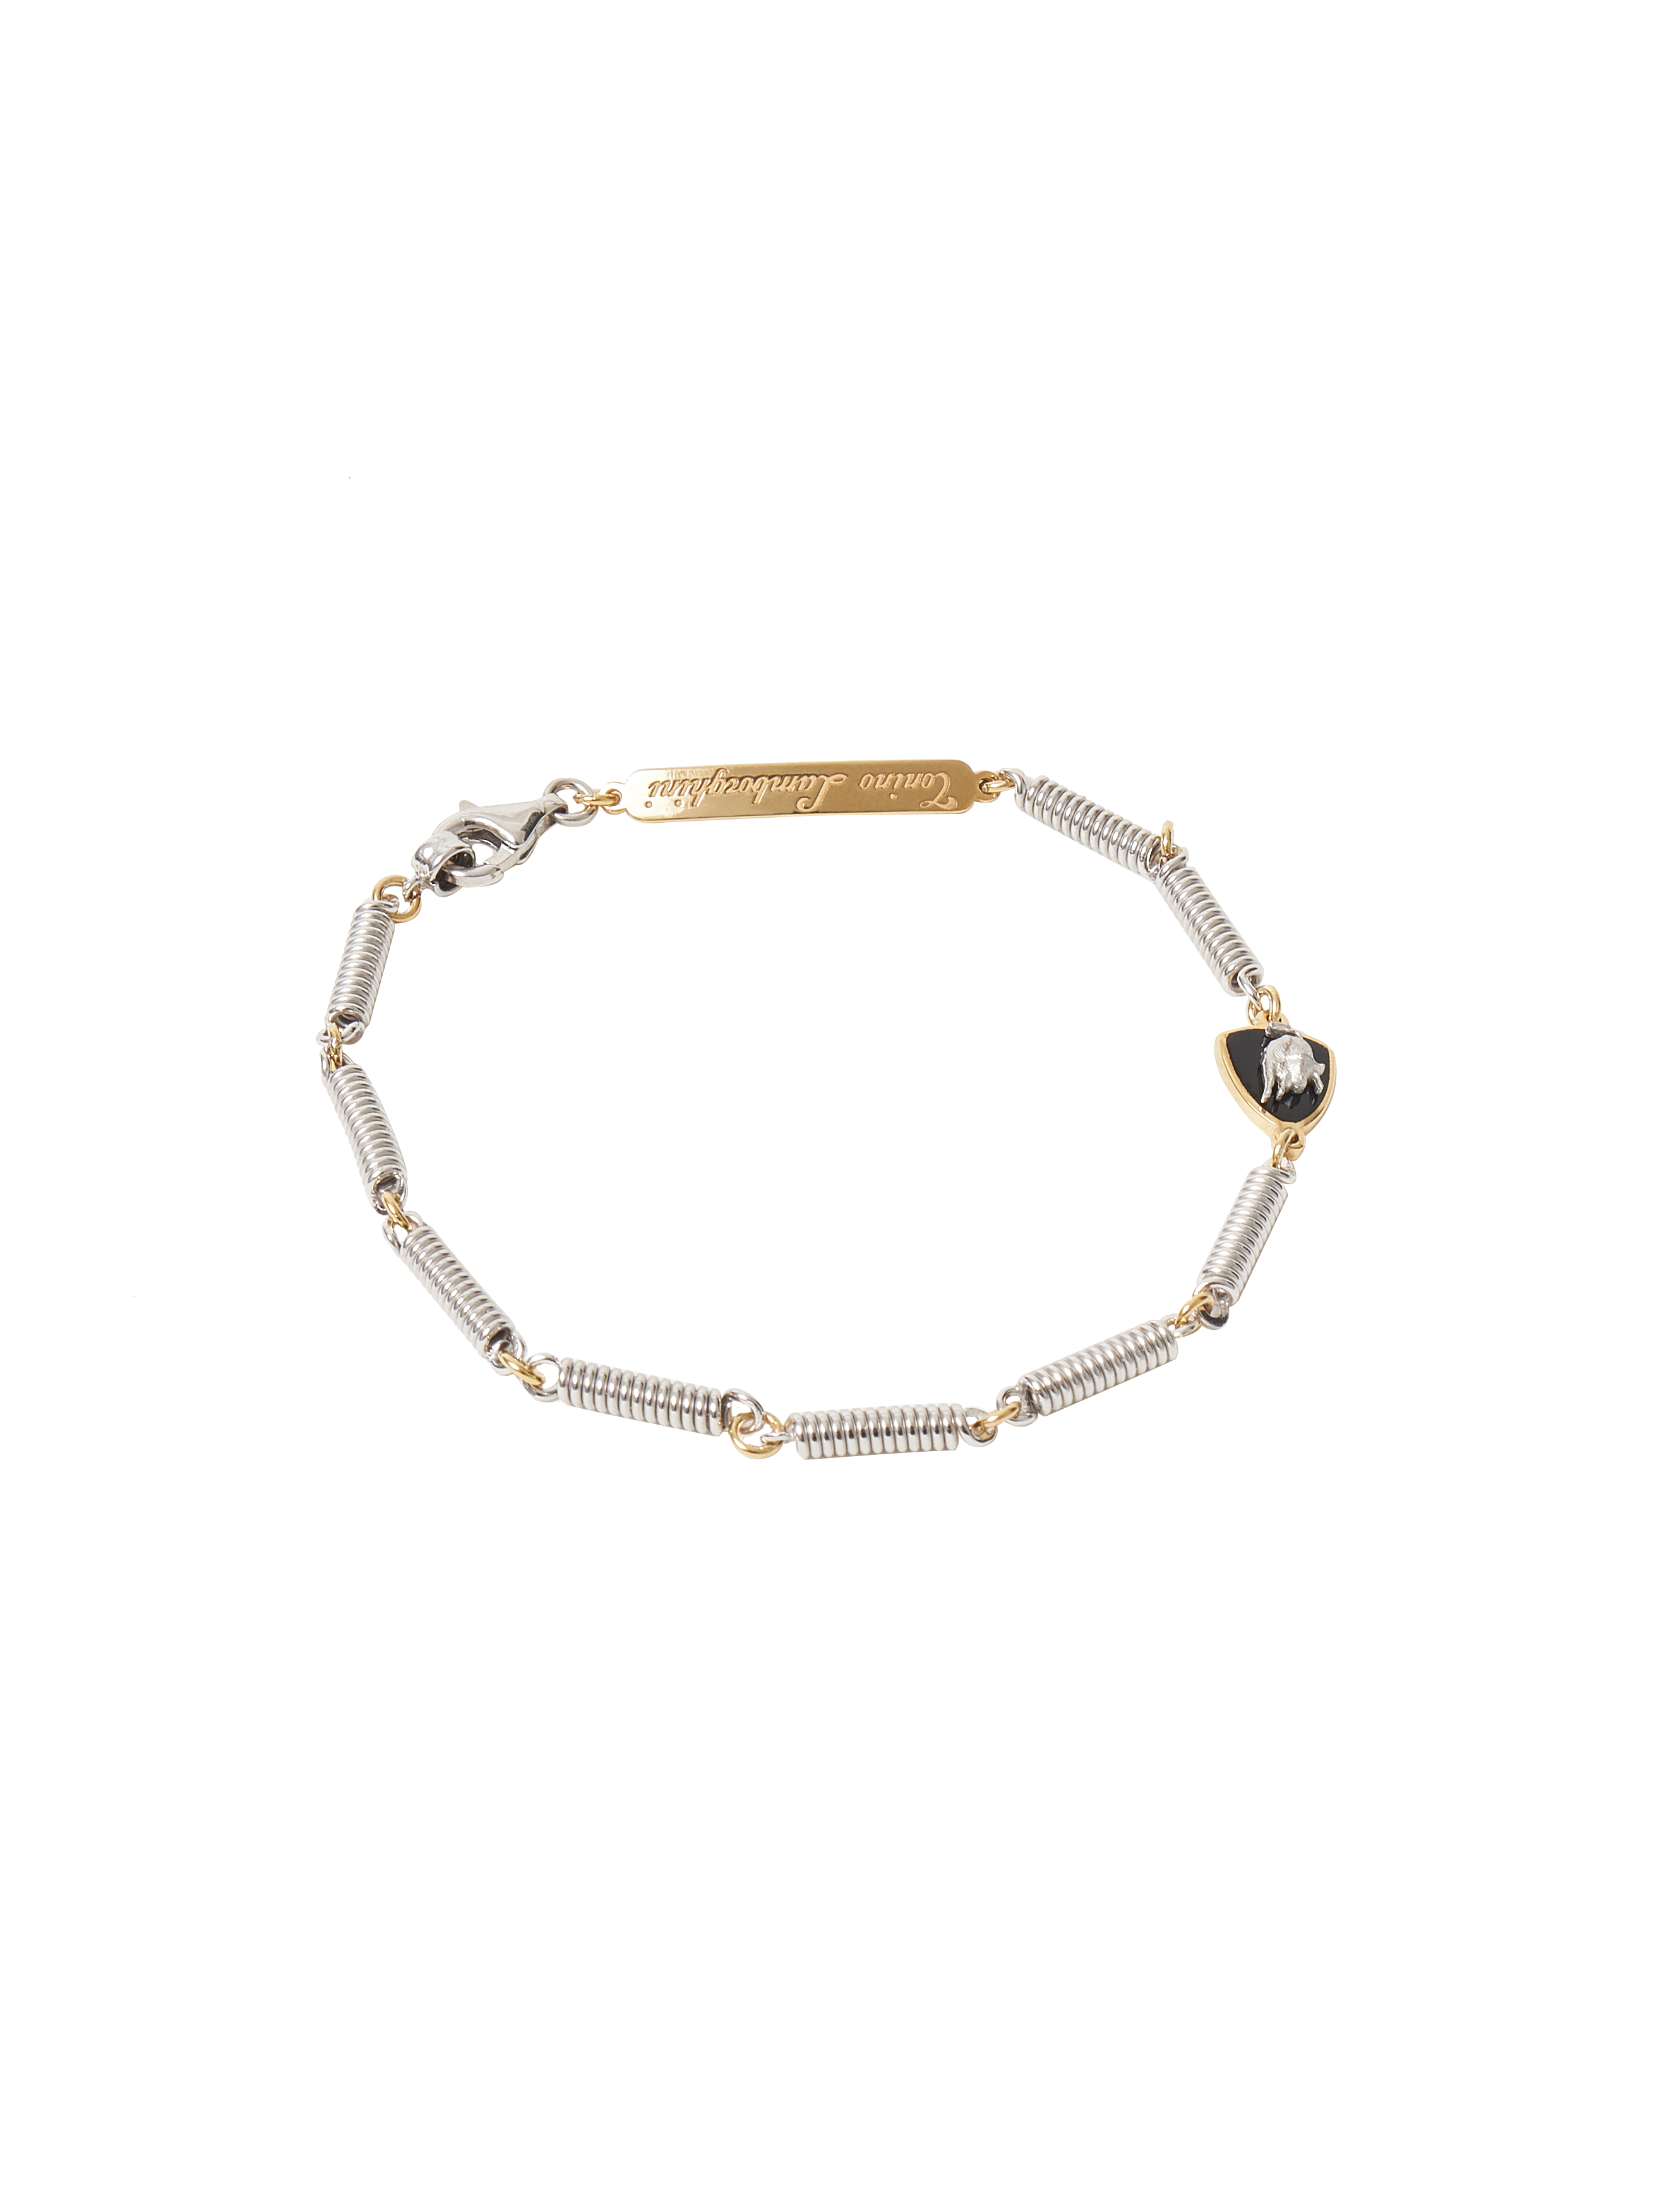 Spring Bracelet - 21 cm